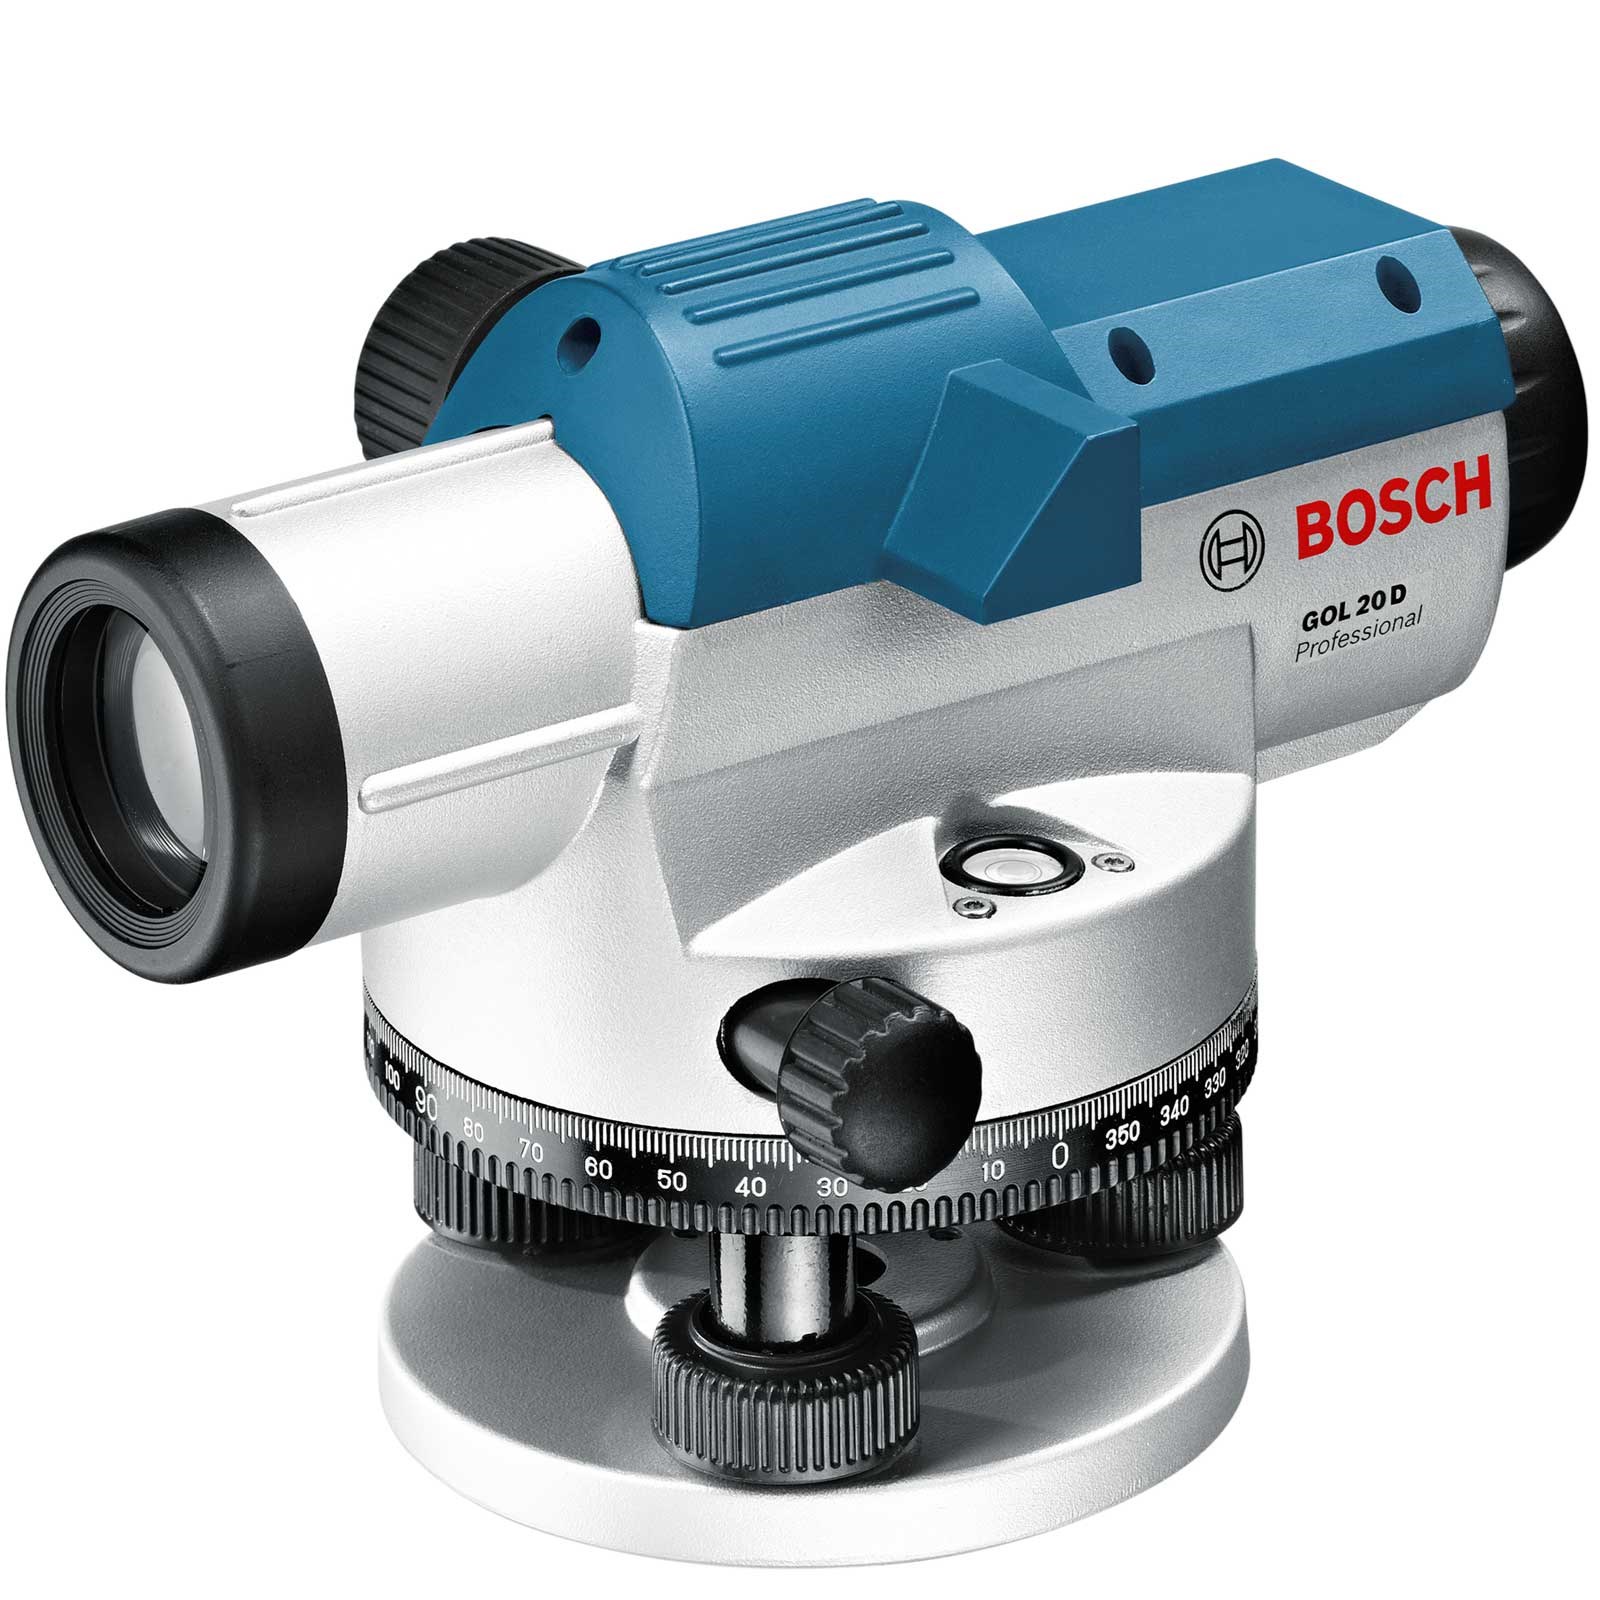  تراز اپتیک بوش مدل GOL20D ا Bosch Optical Level Model GOL20D